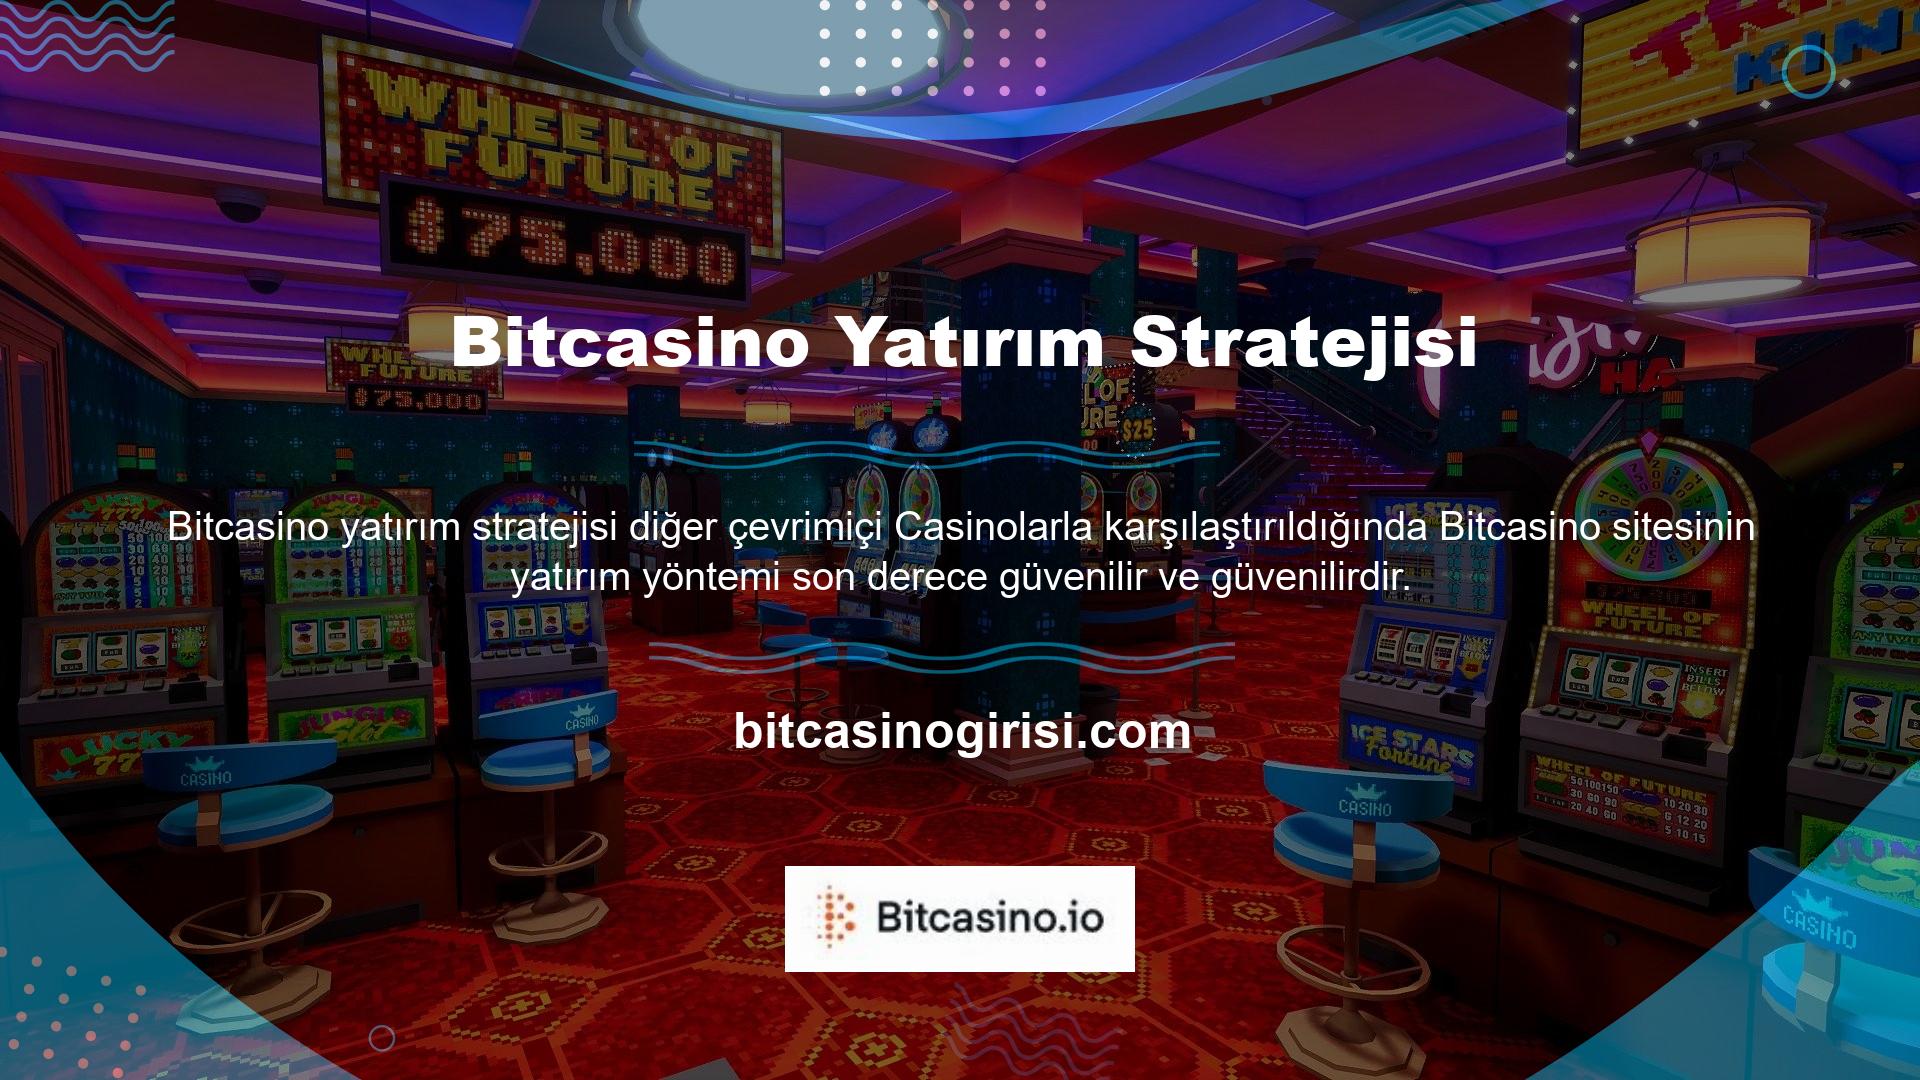 Bitcasino çevrimiçi Casino siteleri, kullanıcıların hemen hemen her türlü yolu kullanarak para yatırmasına ve çekmesine olanak tanır